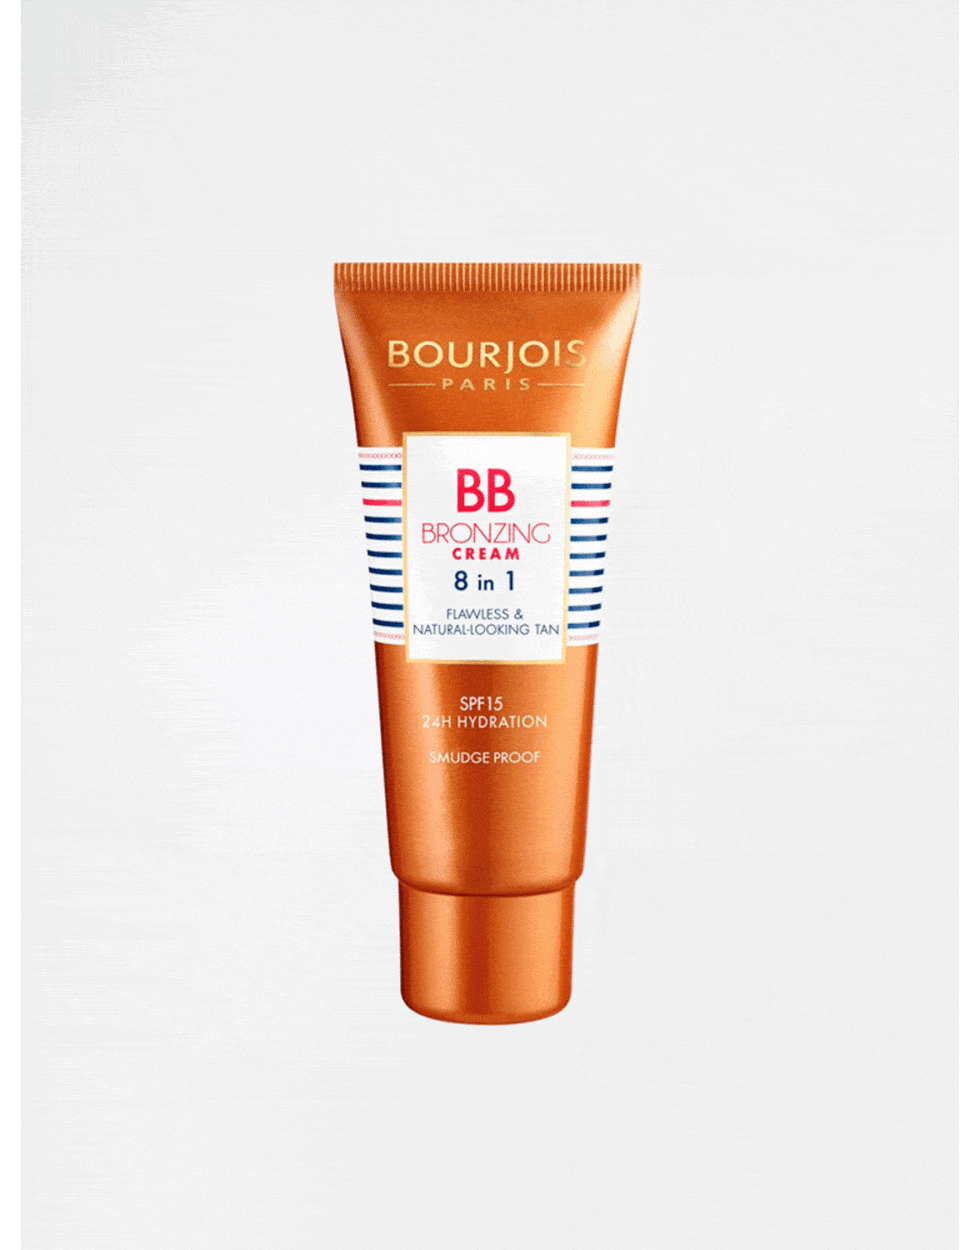 <p><a href="http://www.asos.com/bourjois/bourjois-bb-bronzing-cream-8-in-1/prod/pgeproduct.aspx?iid=5343015&clr=Dark&SearchQuery=bb+bourjois&SearchRedirect=true" target="_blank">Bourjois BB Bronzing Cream  8 in 1 £9.99</a></p>

<p>The light texture makes